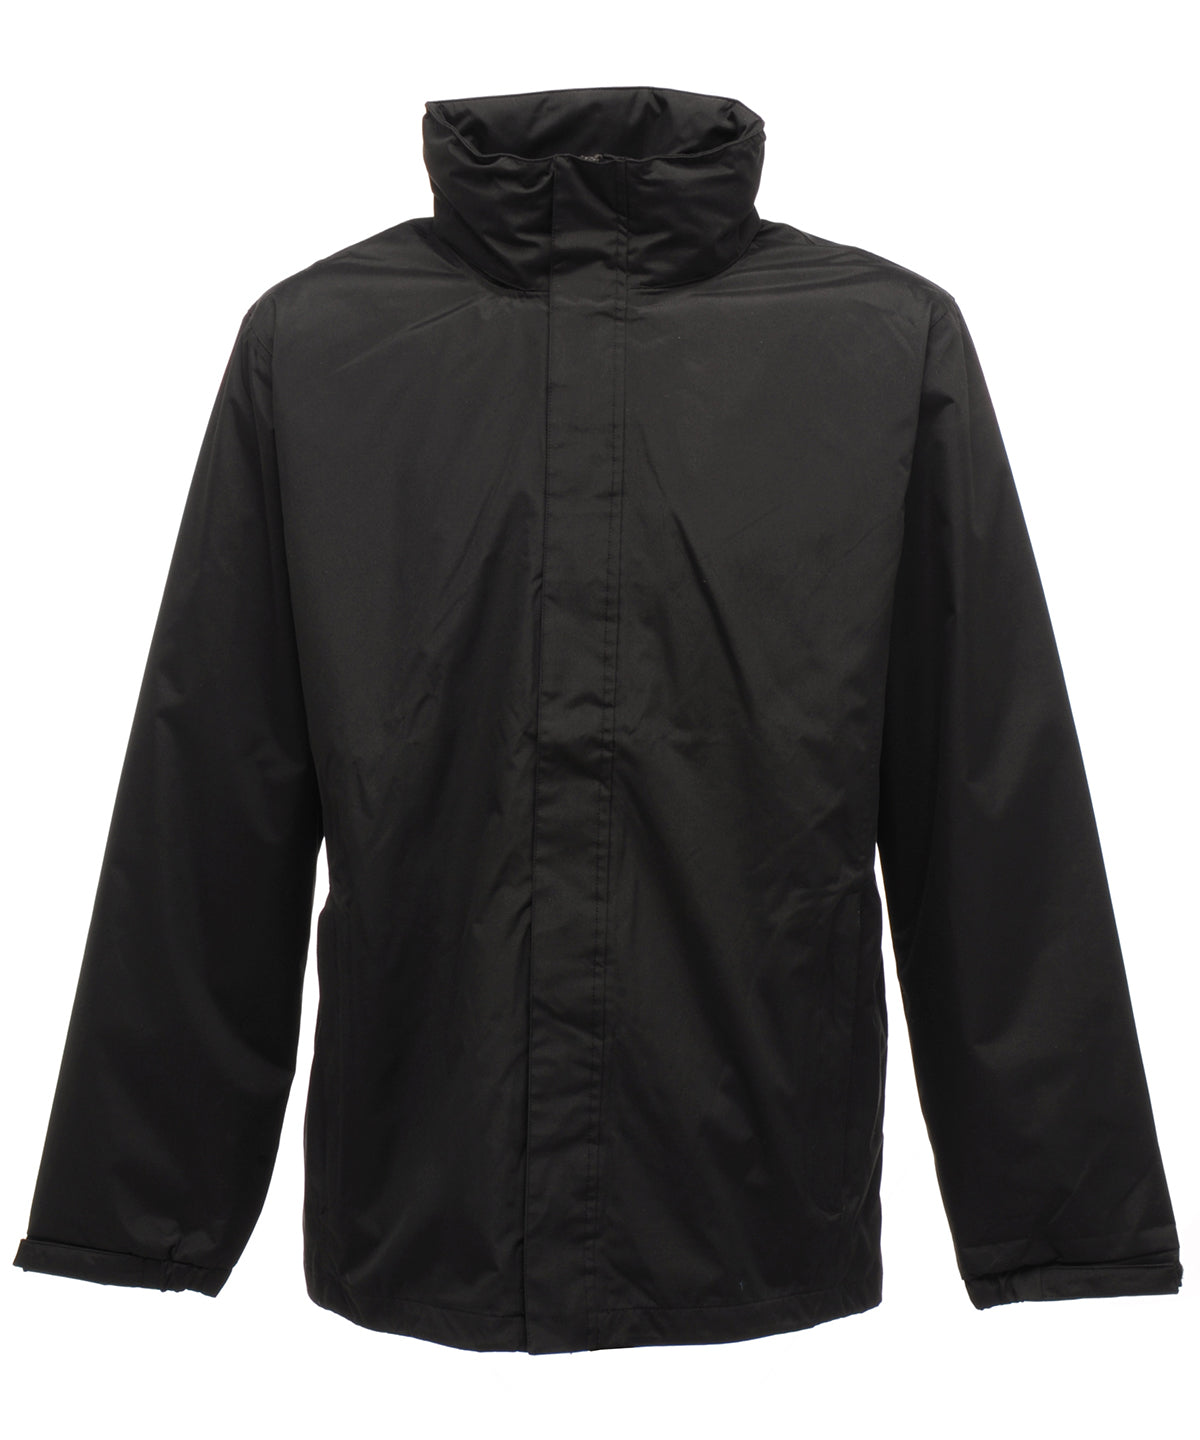 Ardmore waterproof shell jacket | Black